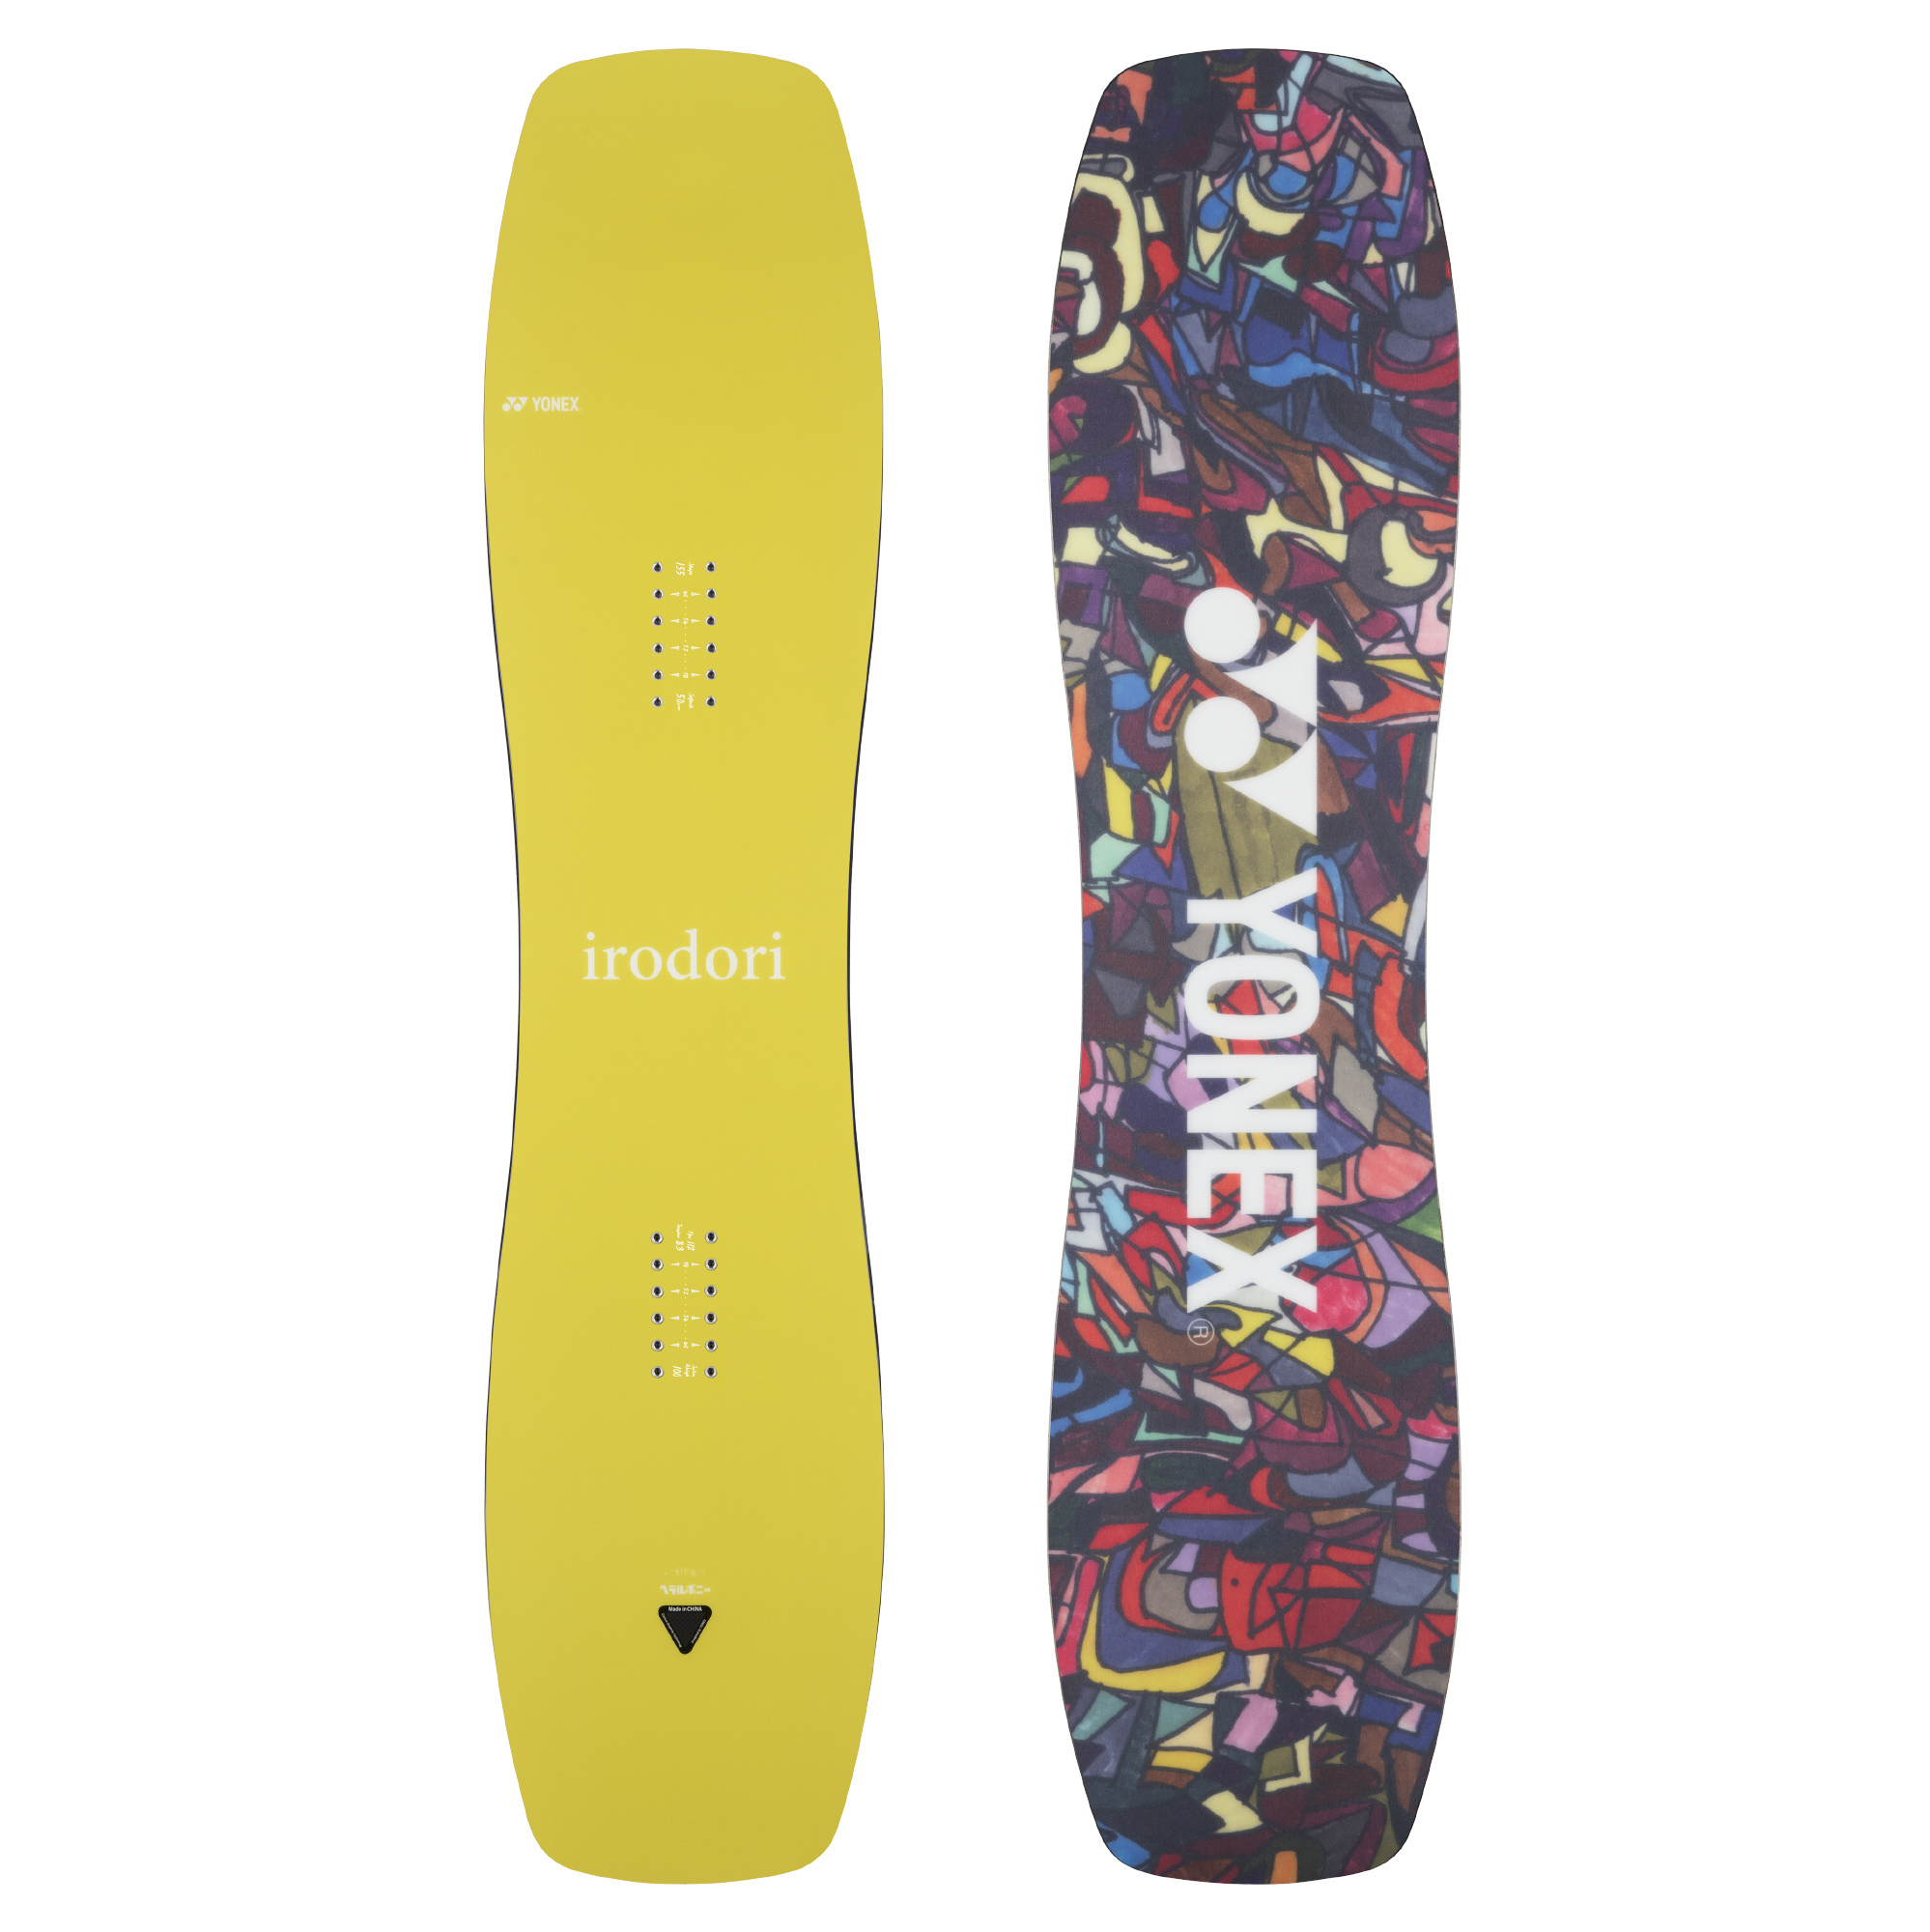 IRODORI | BOARDS ボード | YONEX SNOWBOARDS ヨネックススノーボード